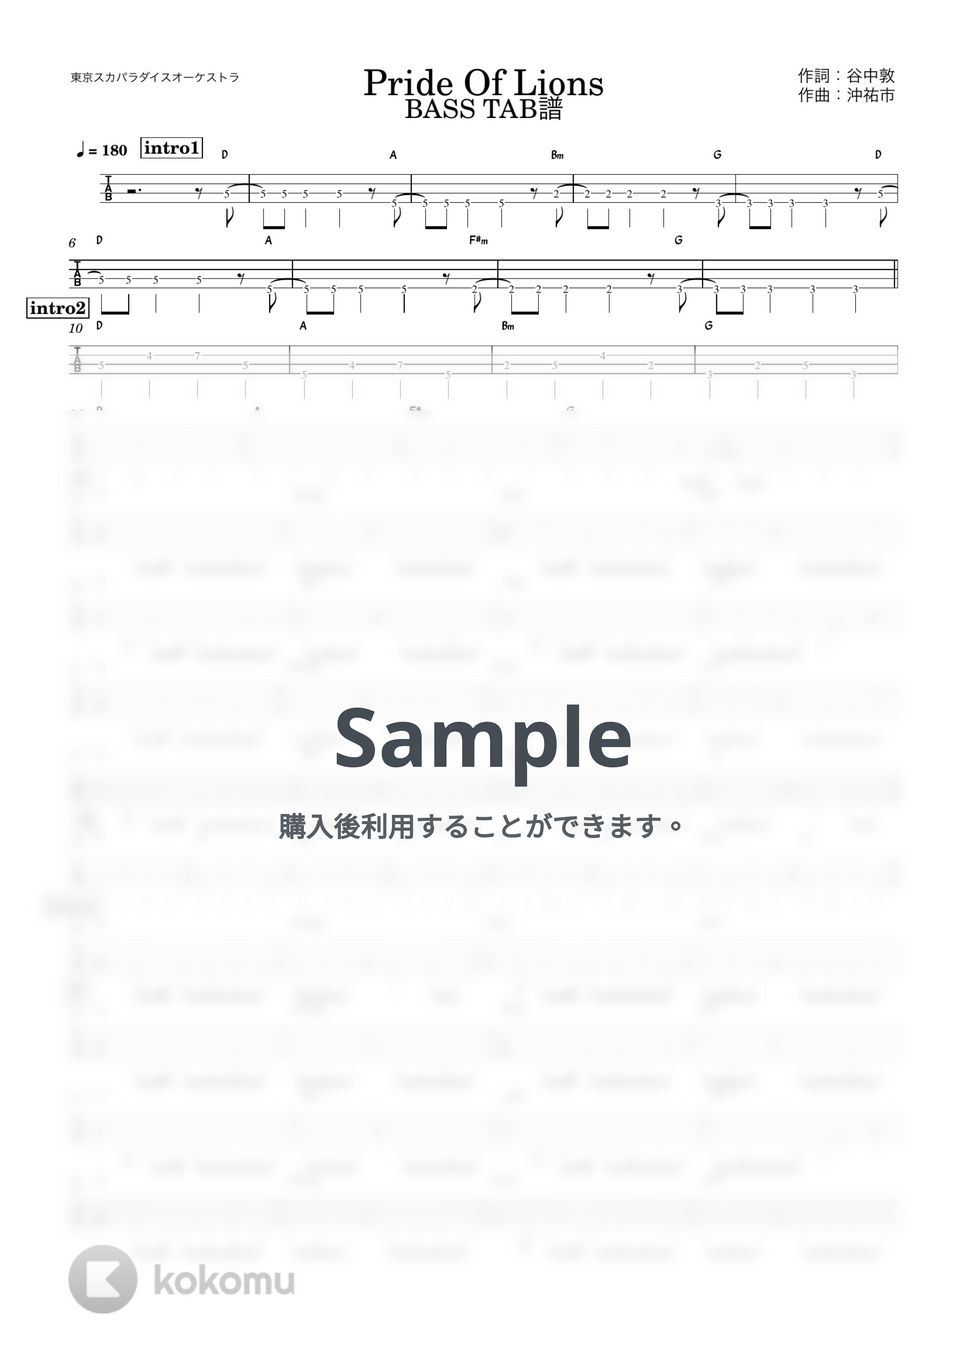 東京スカパラダイスオーケストラ - Pride Of Lions (『ベースTAB譜』4弦ベース対応) by 箱譜屋